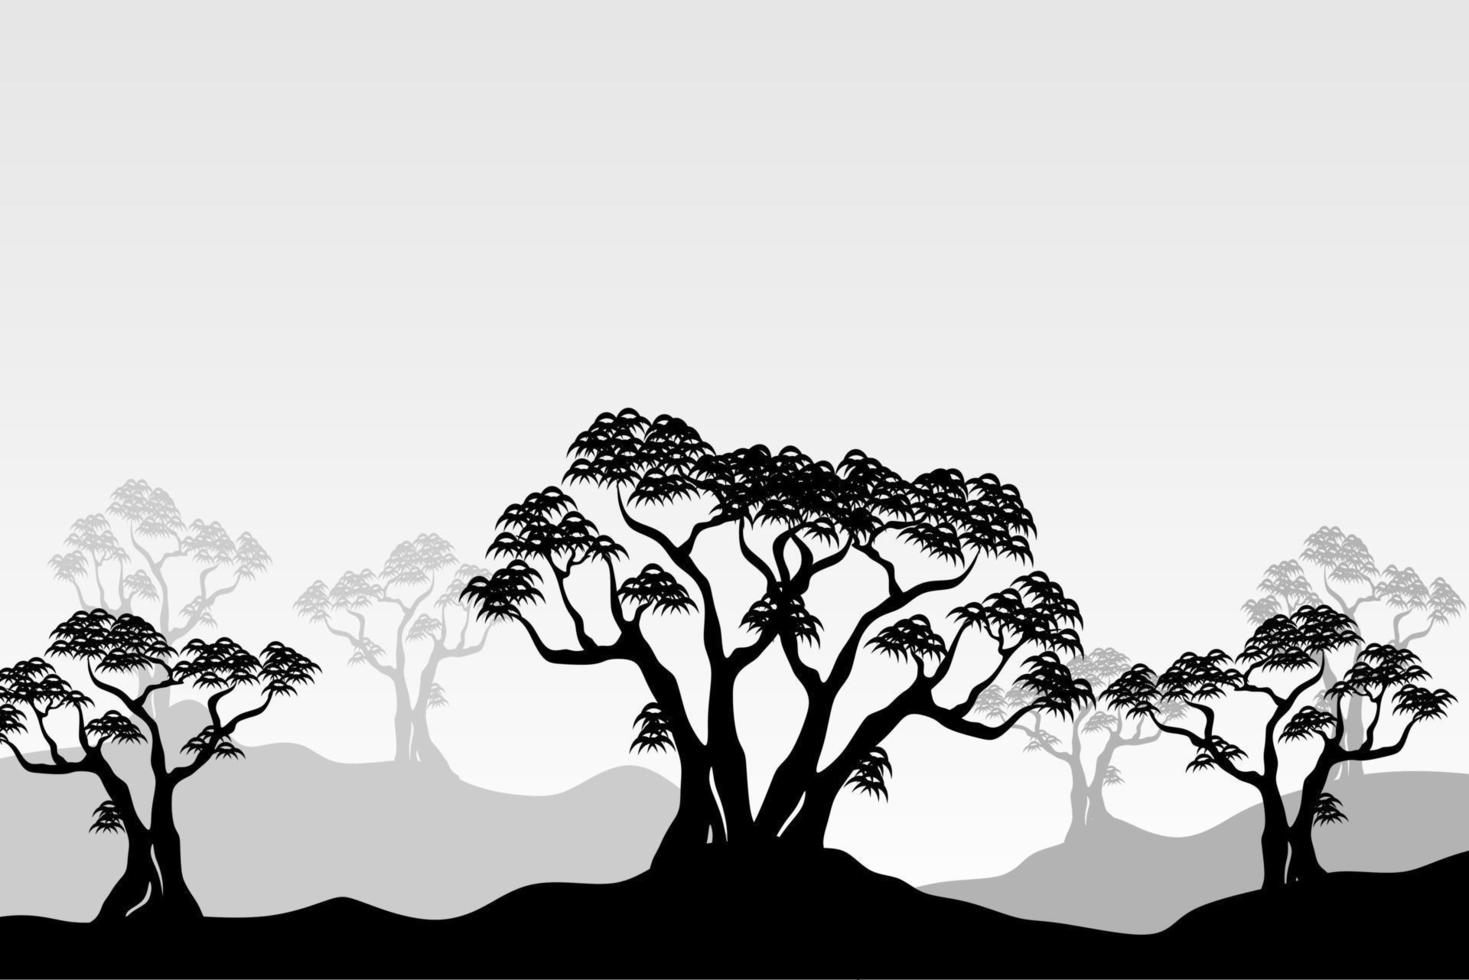 paesaggio panoramico della siluetta dell'albero di mangrovie in bianco e nero vettore